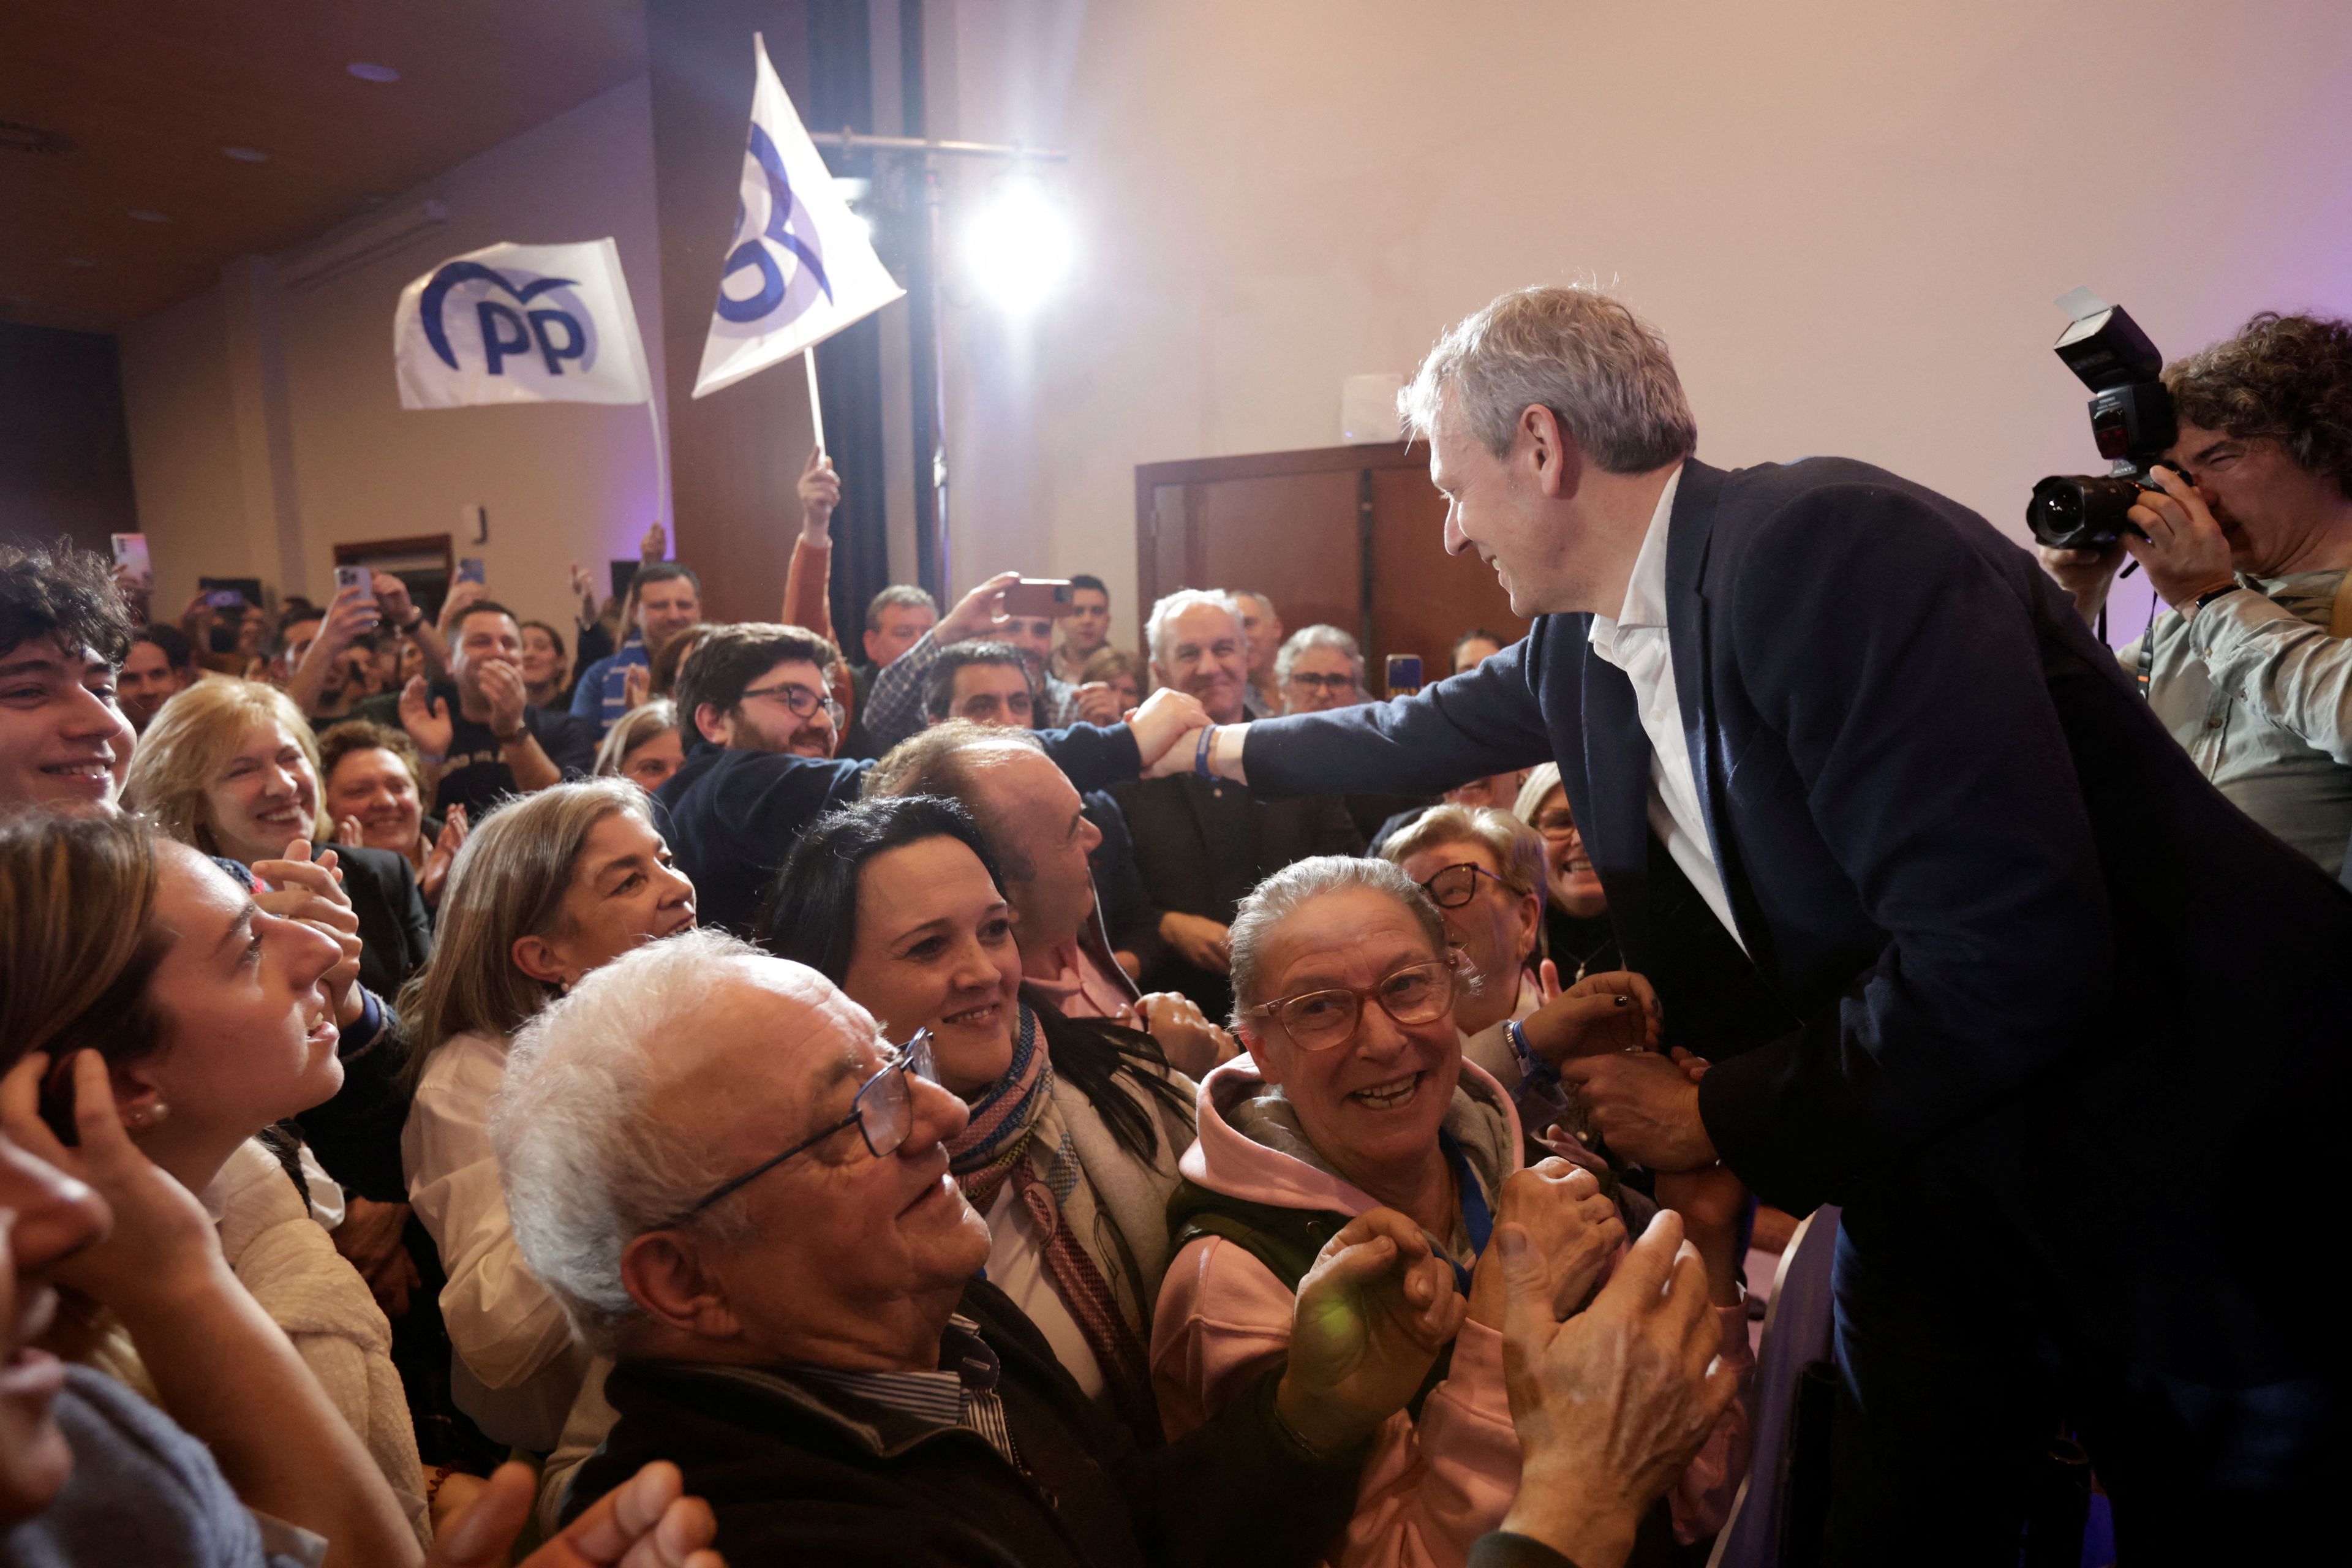 Foto del día: Alfonso Rueda, presidente de la Xunta de Galicia, celebra los resultados de su partido en las elecciones del 18 de febrero. El PP retiene la mayoría absoluta con 40 escaños.